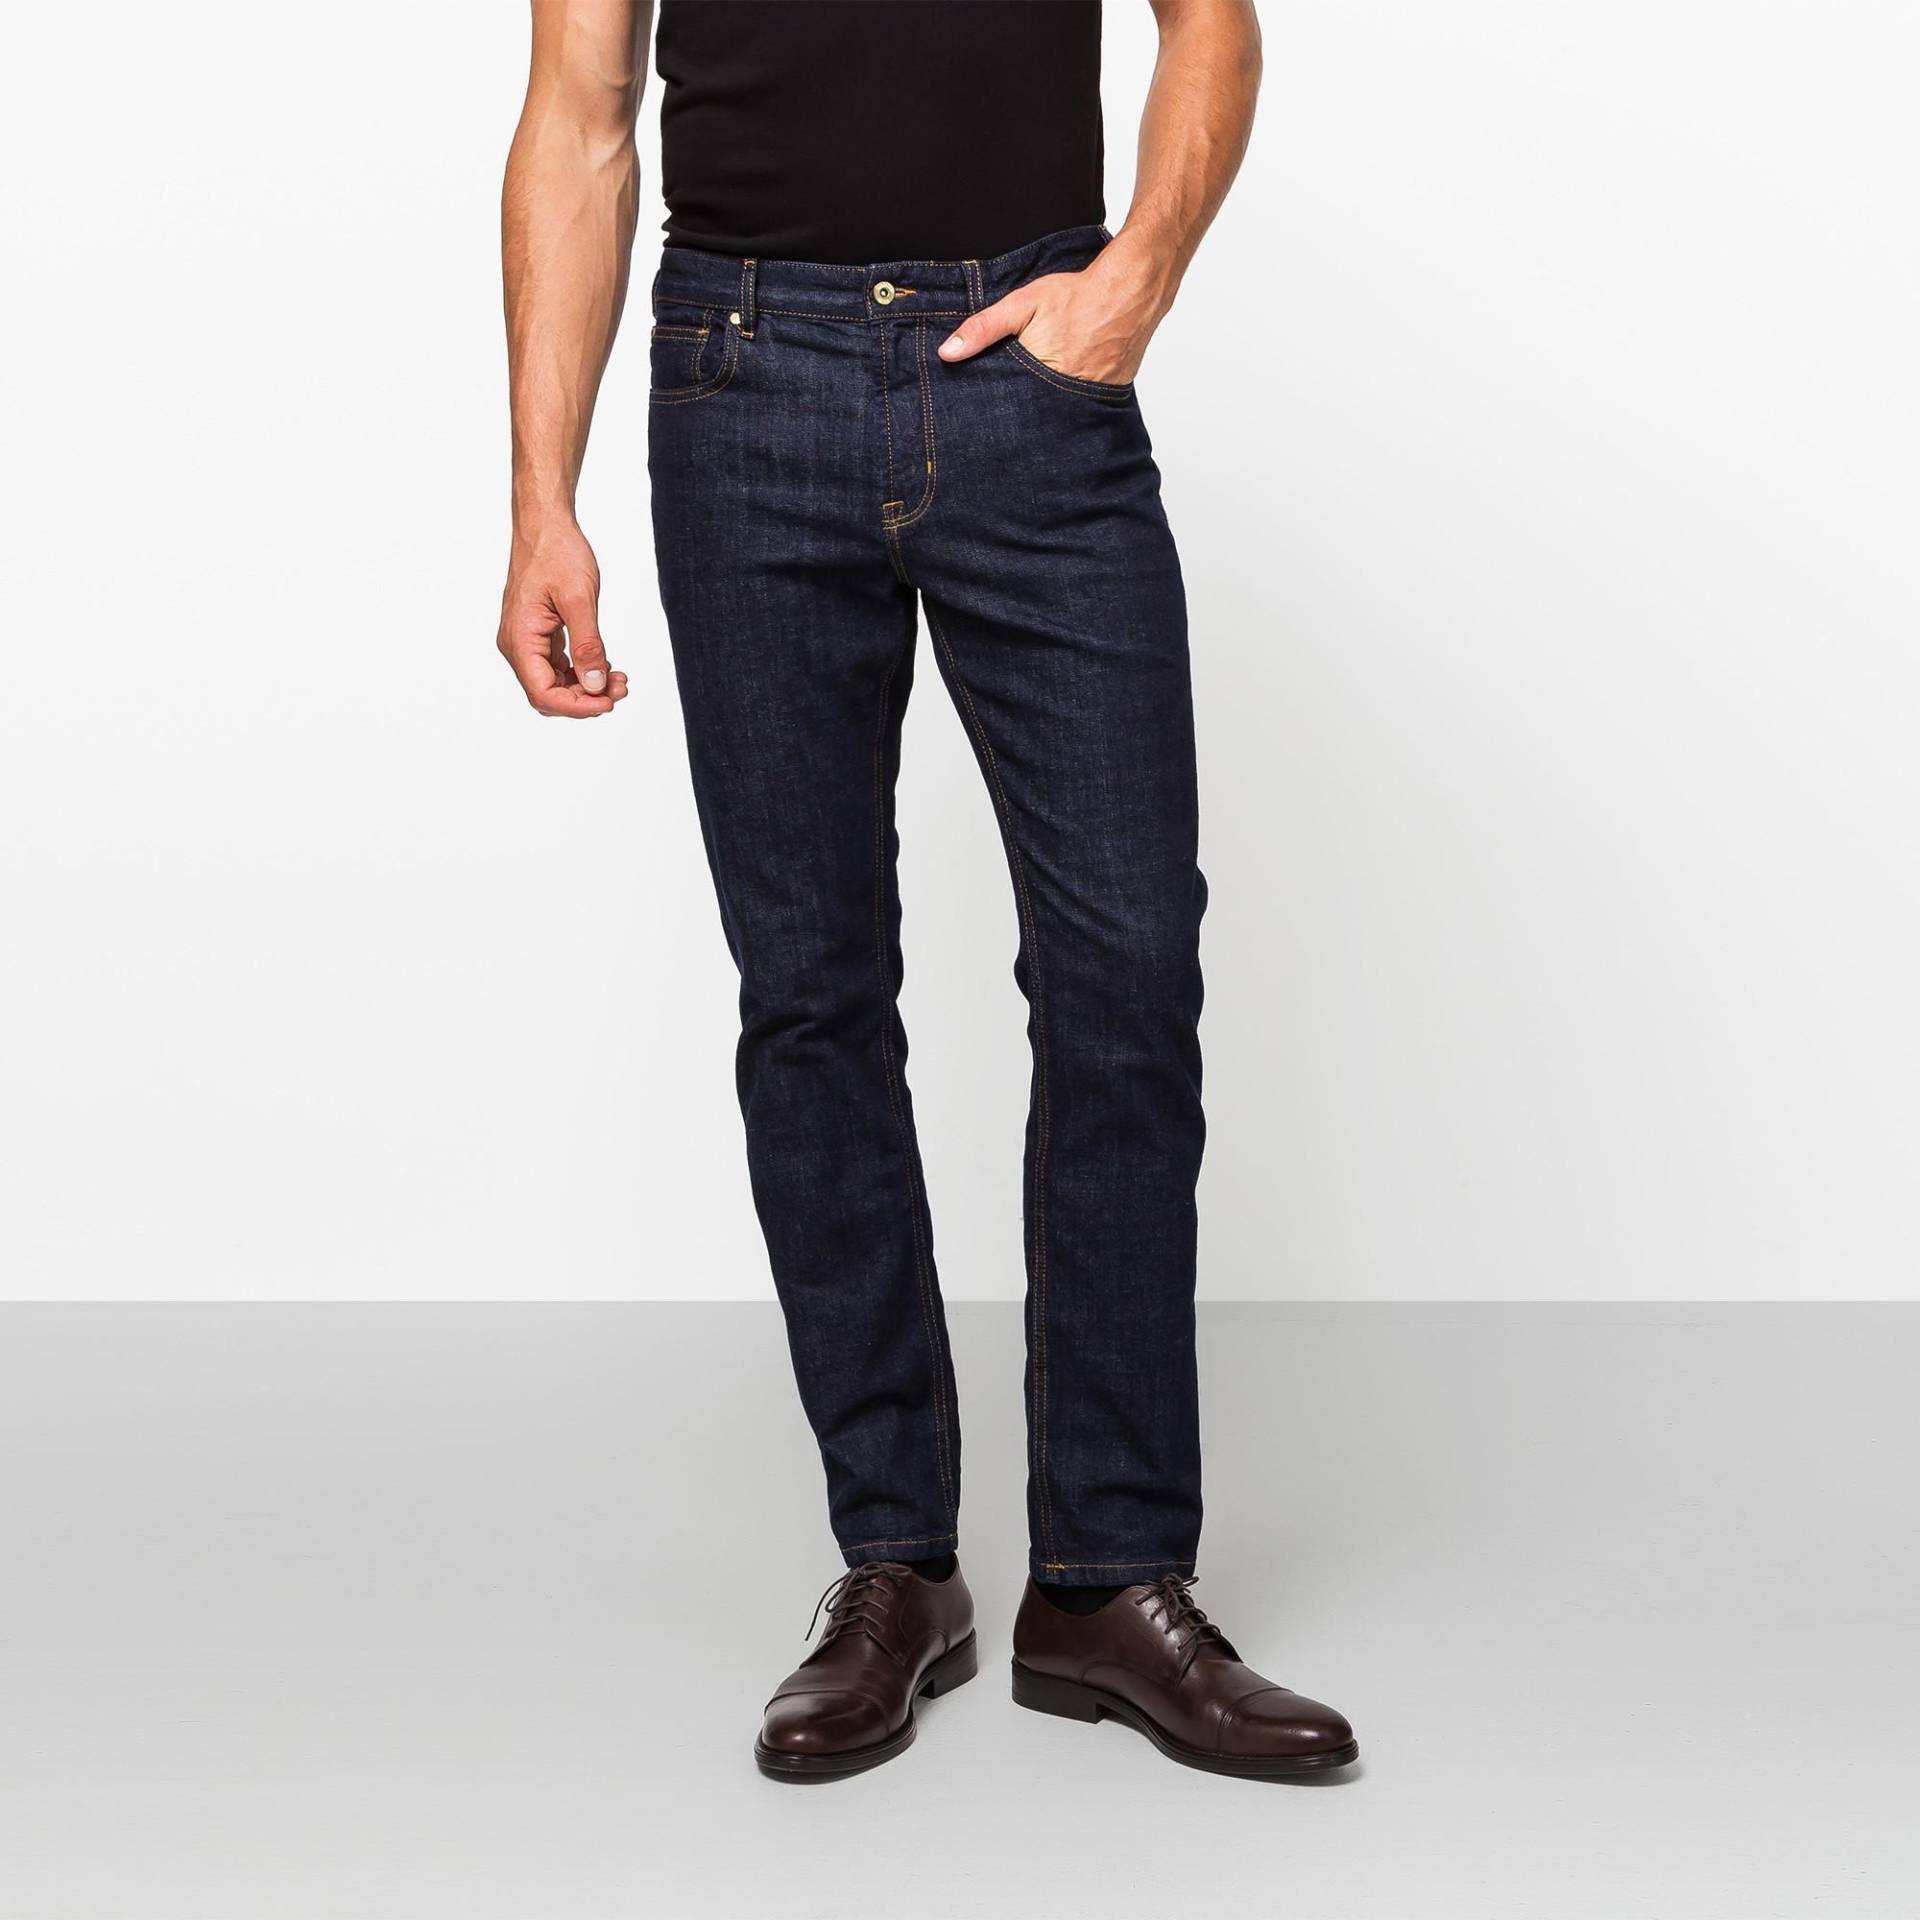 Jeans, Slim Fit Herren Blau Denim Dunkel L34/W34 von Manor Man